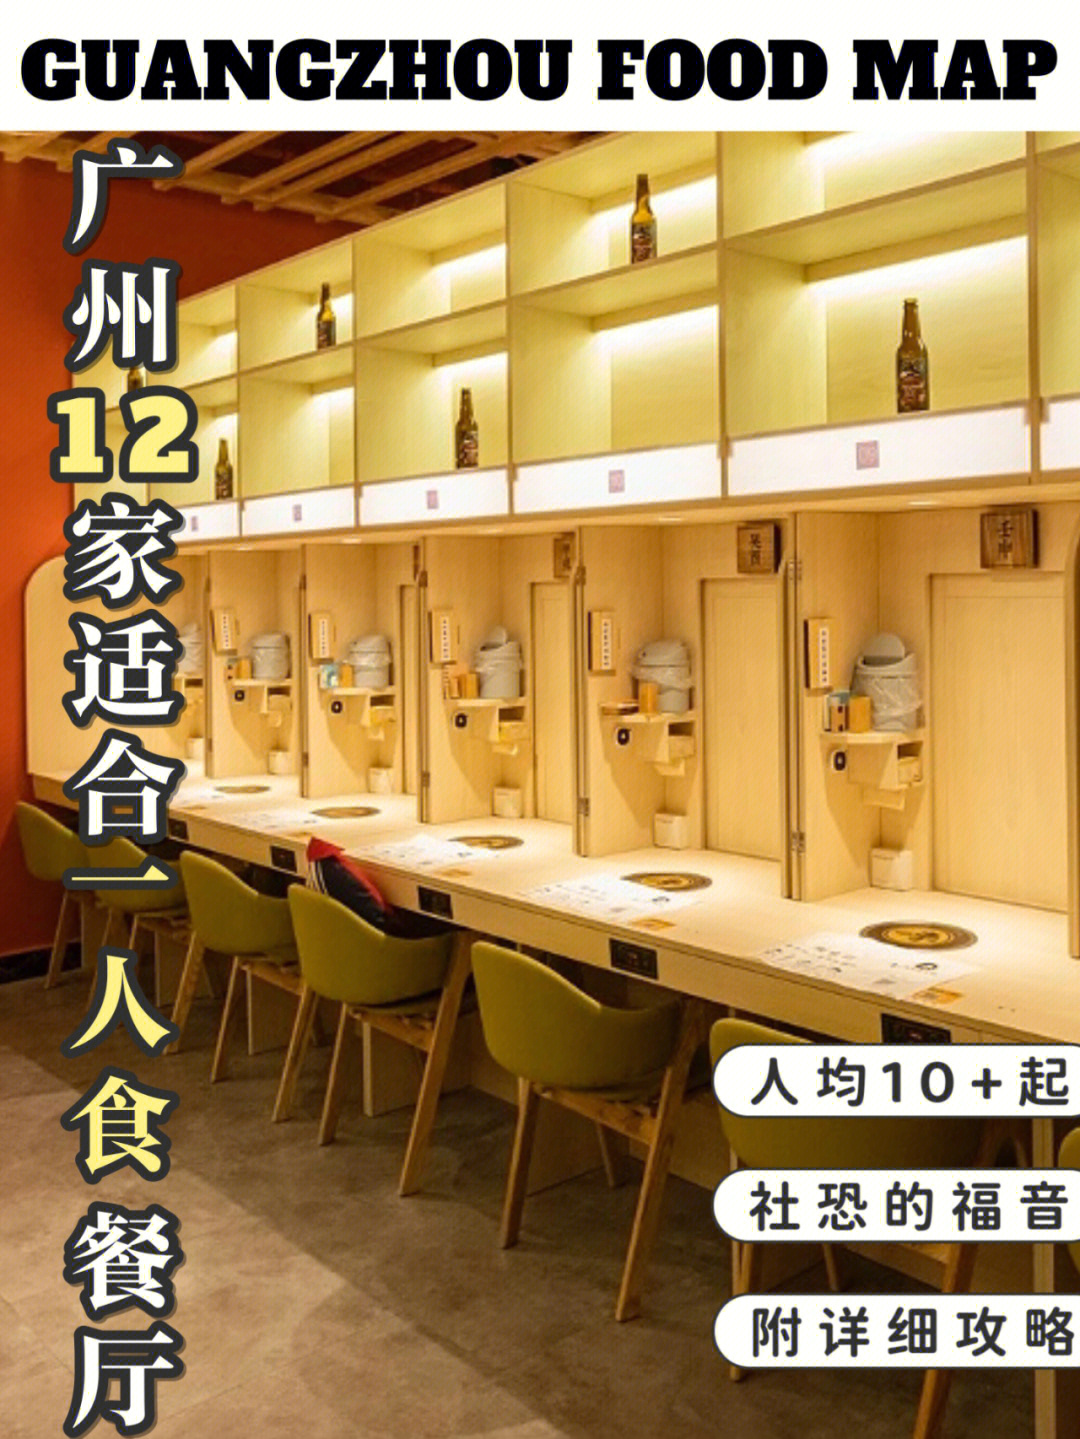 揾食地图广州12家一人食餐厅人均10r起